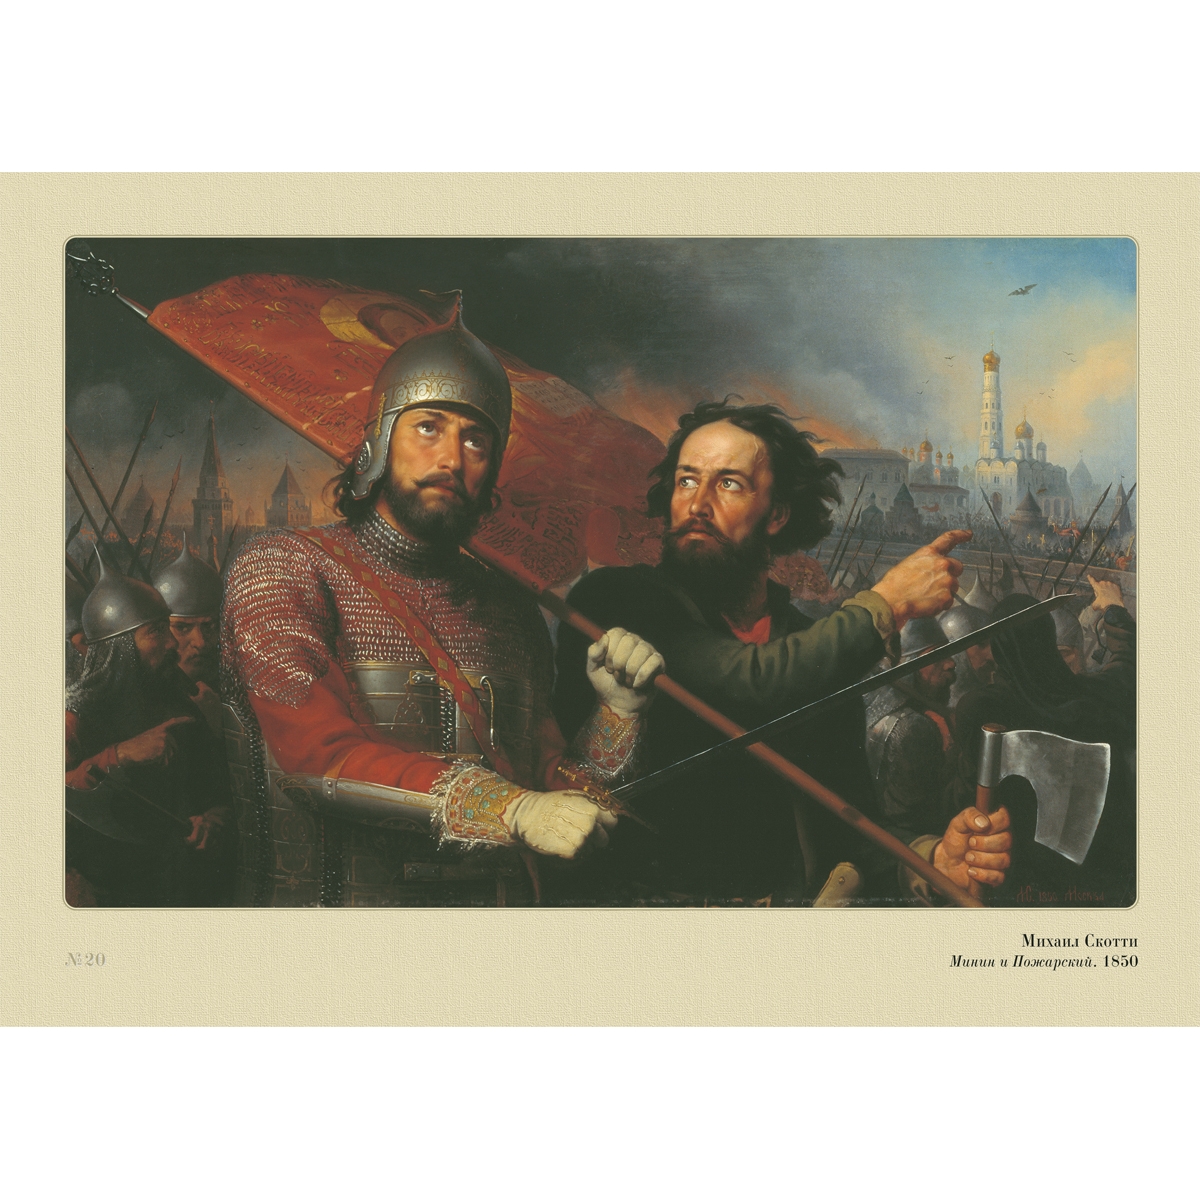 1611 1612 год. Скотти Минин и Пожарский. Минин и Пожарский художник м. и. Скотти. Минин и Пожарский привели войско к Москве.